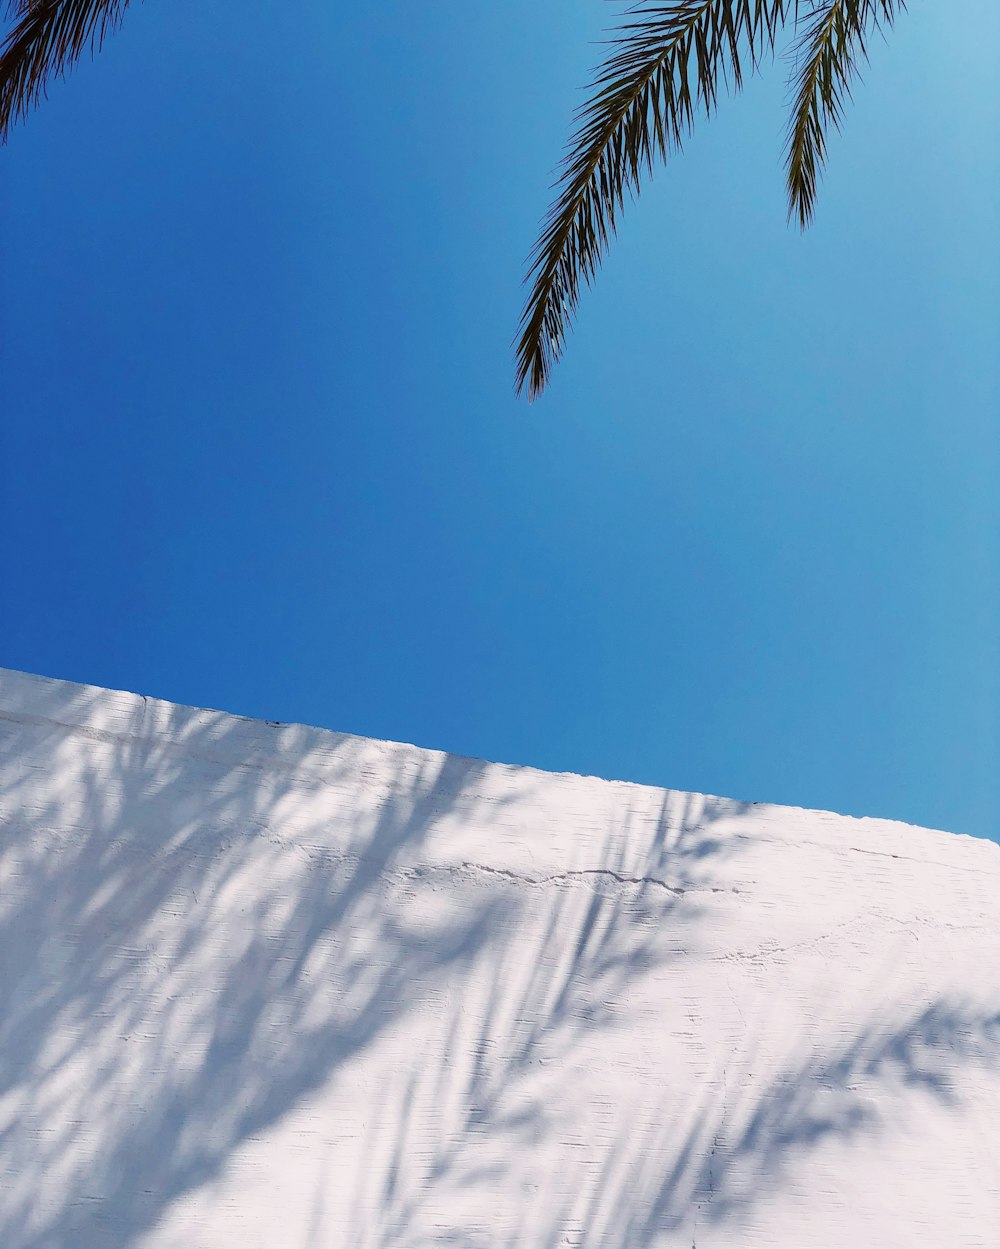 Palmier vert sur sol enneigé sous ciel bleu pendant la journée